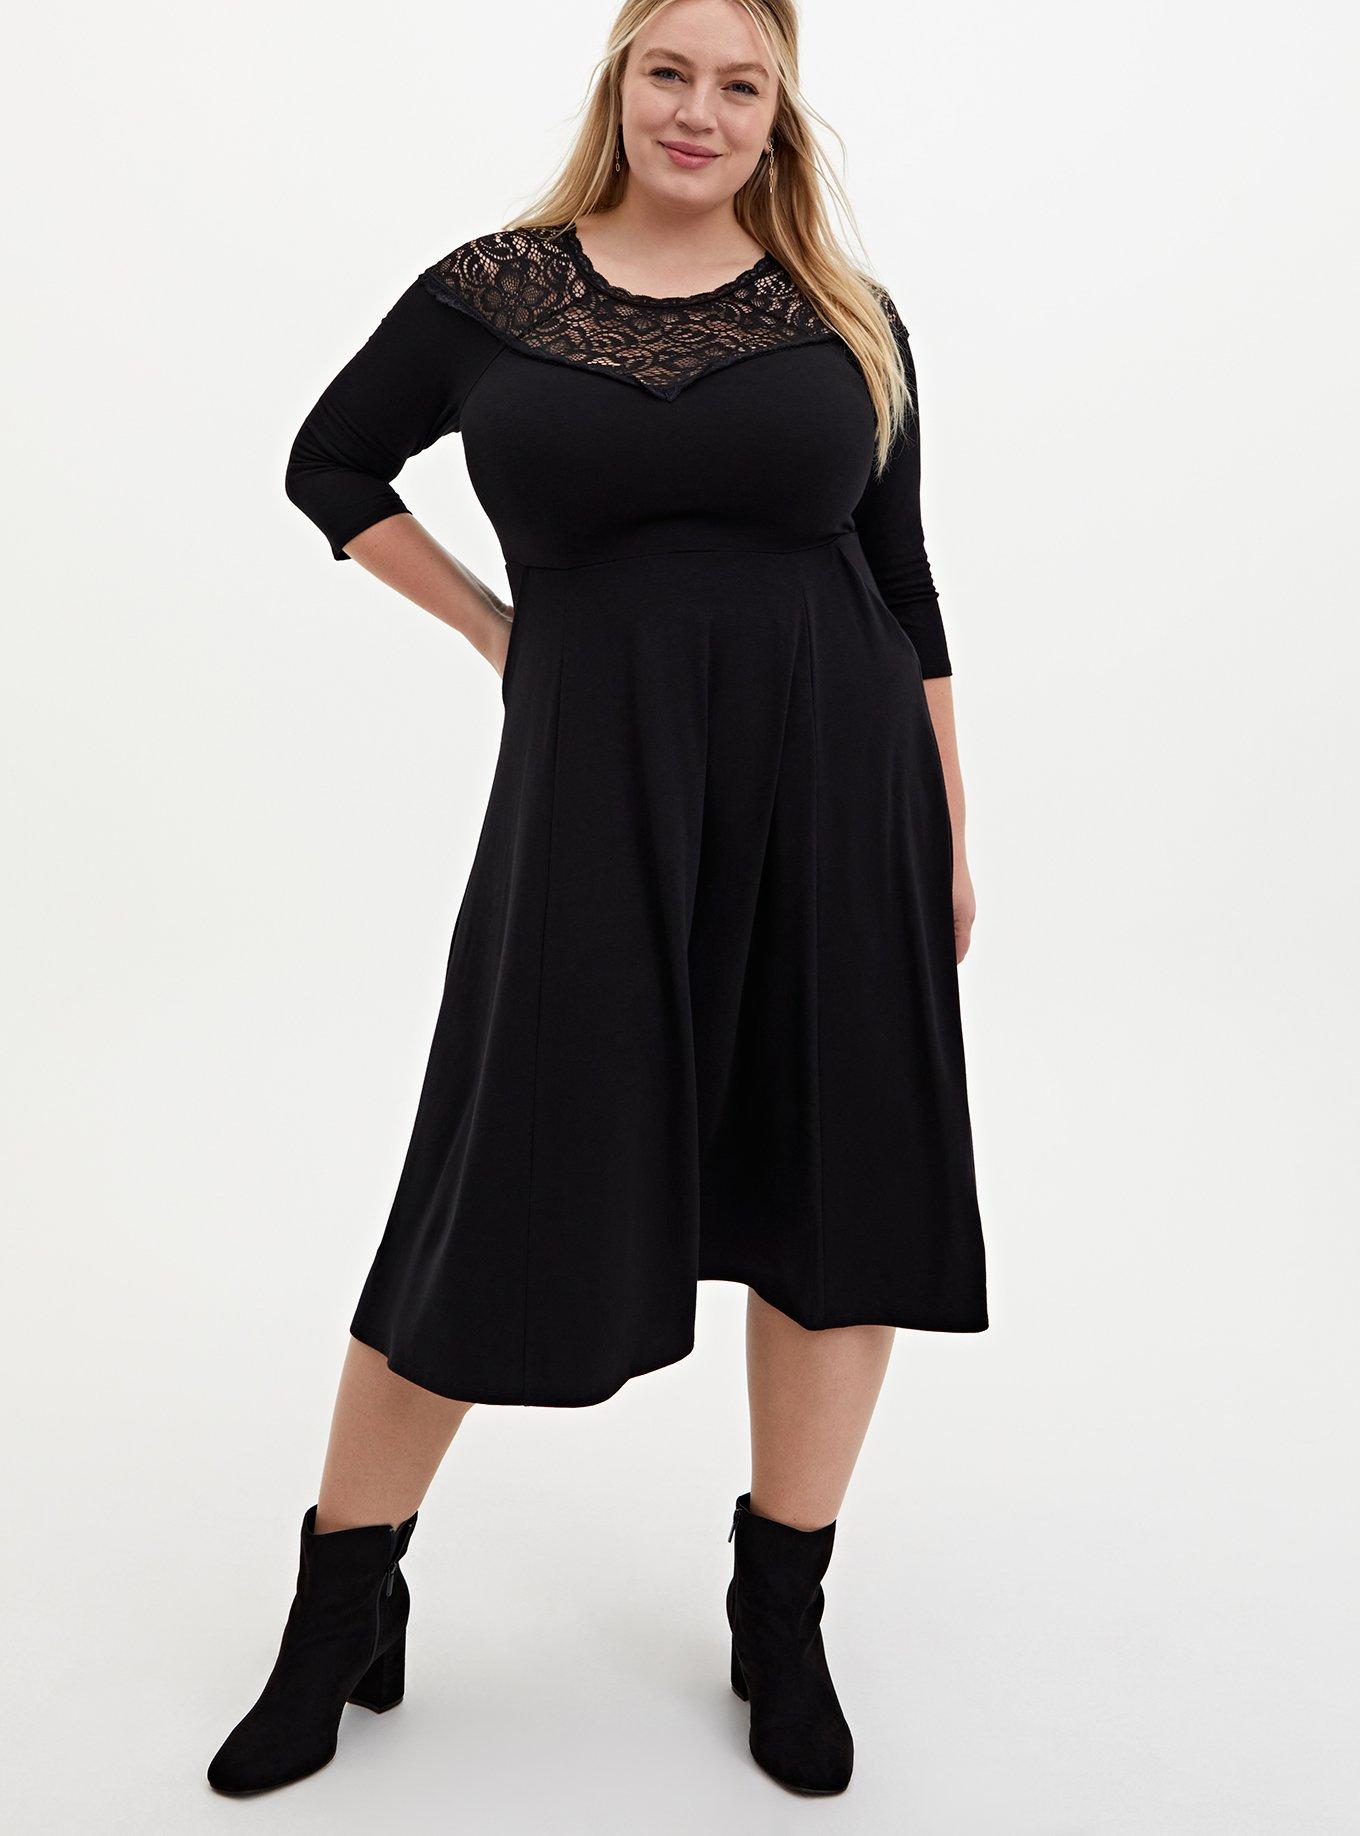 Plus Size - Super Soft & Lace Yoke Black Midi Dress - Torrid